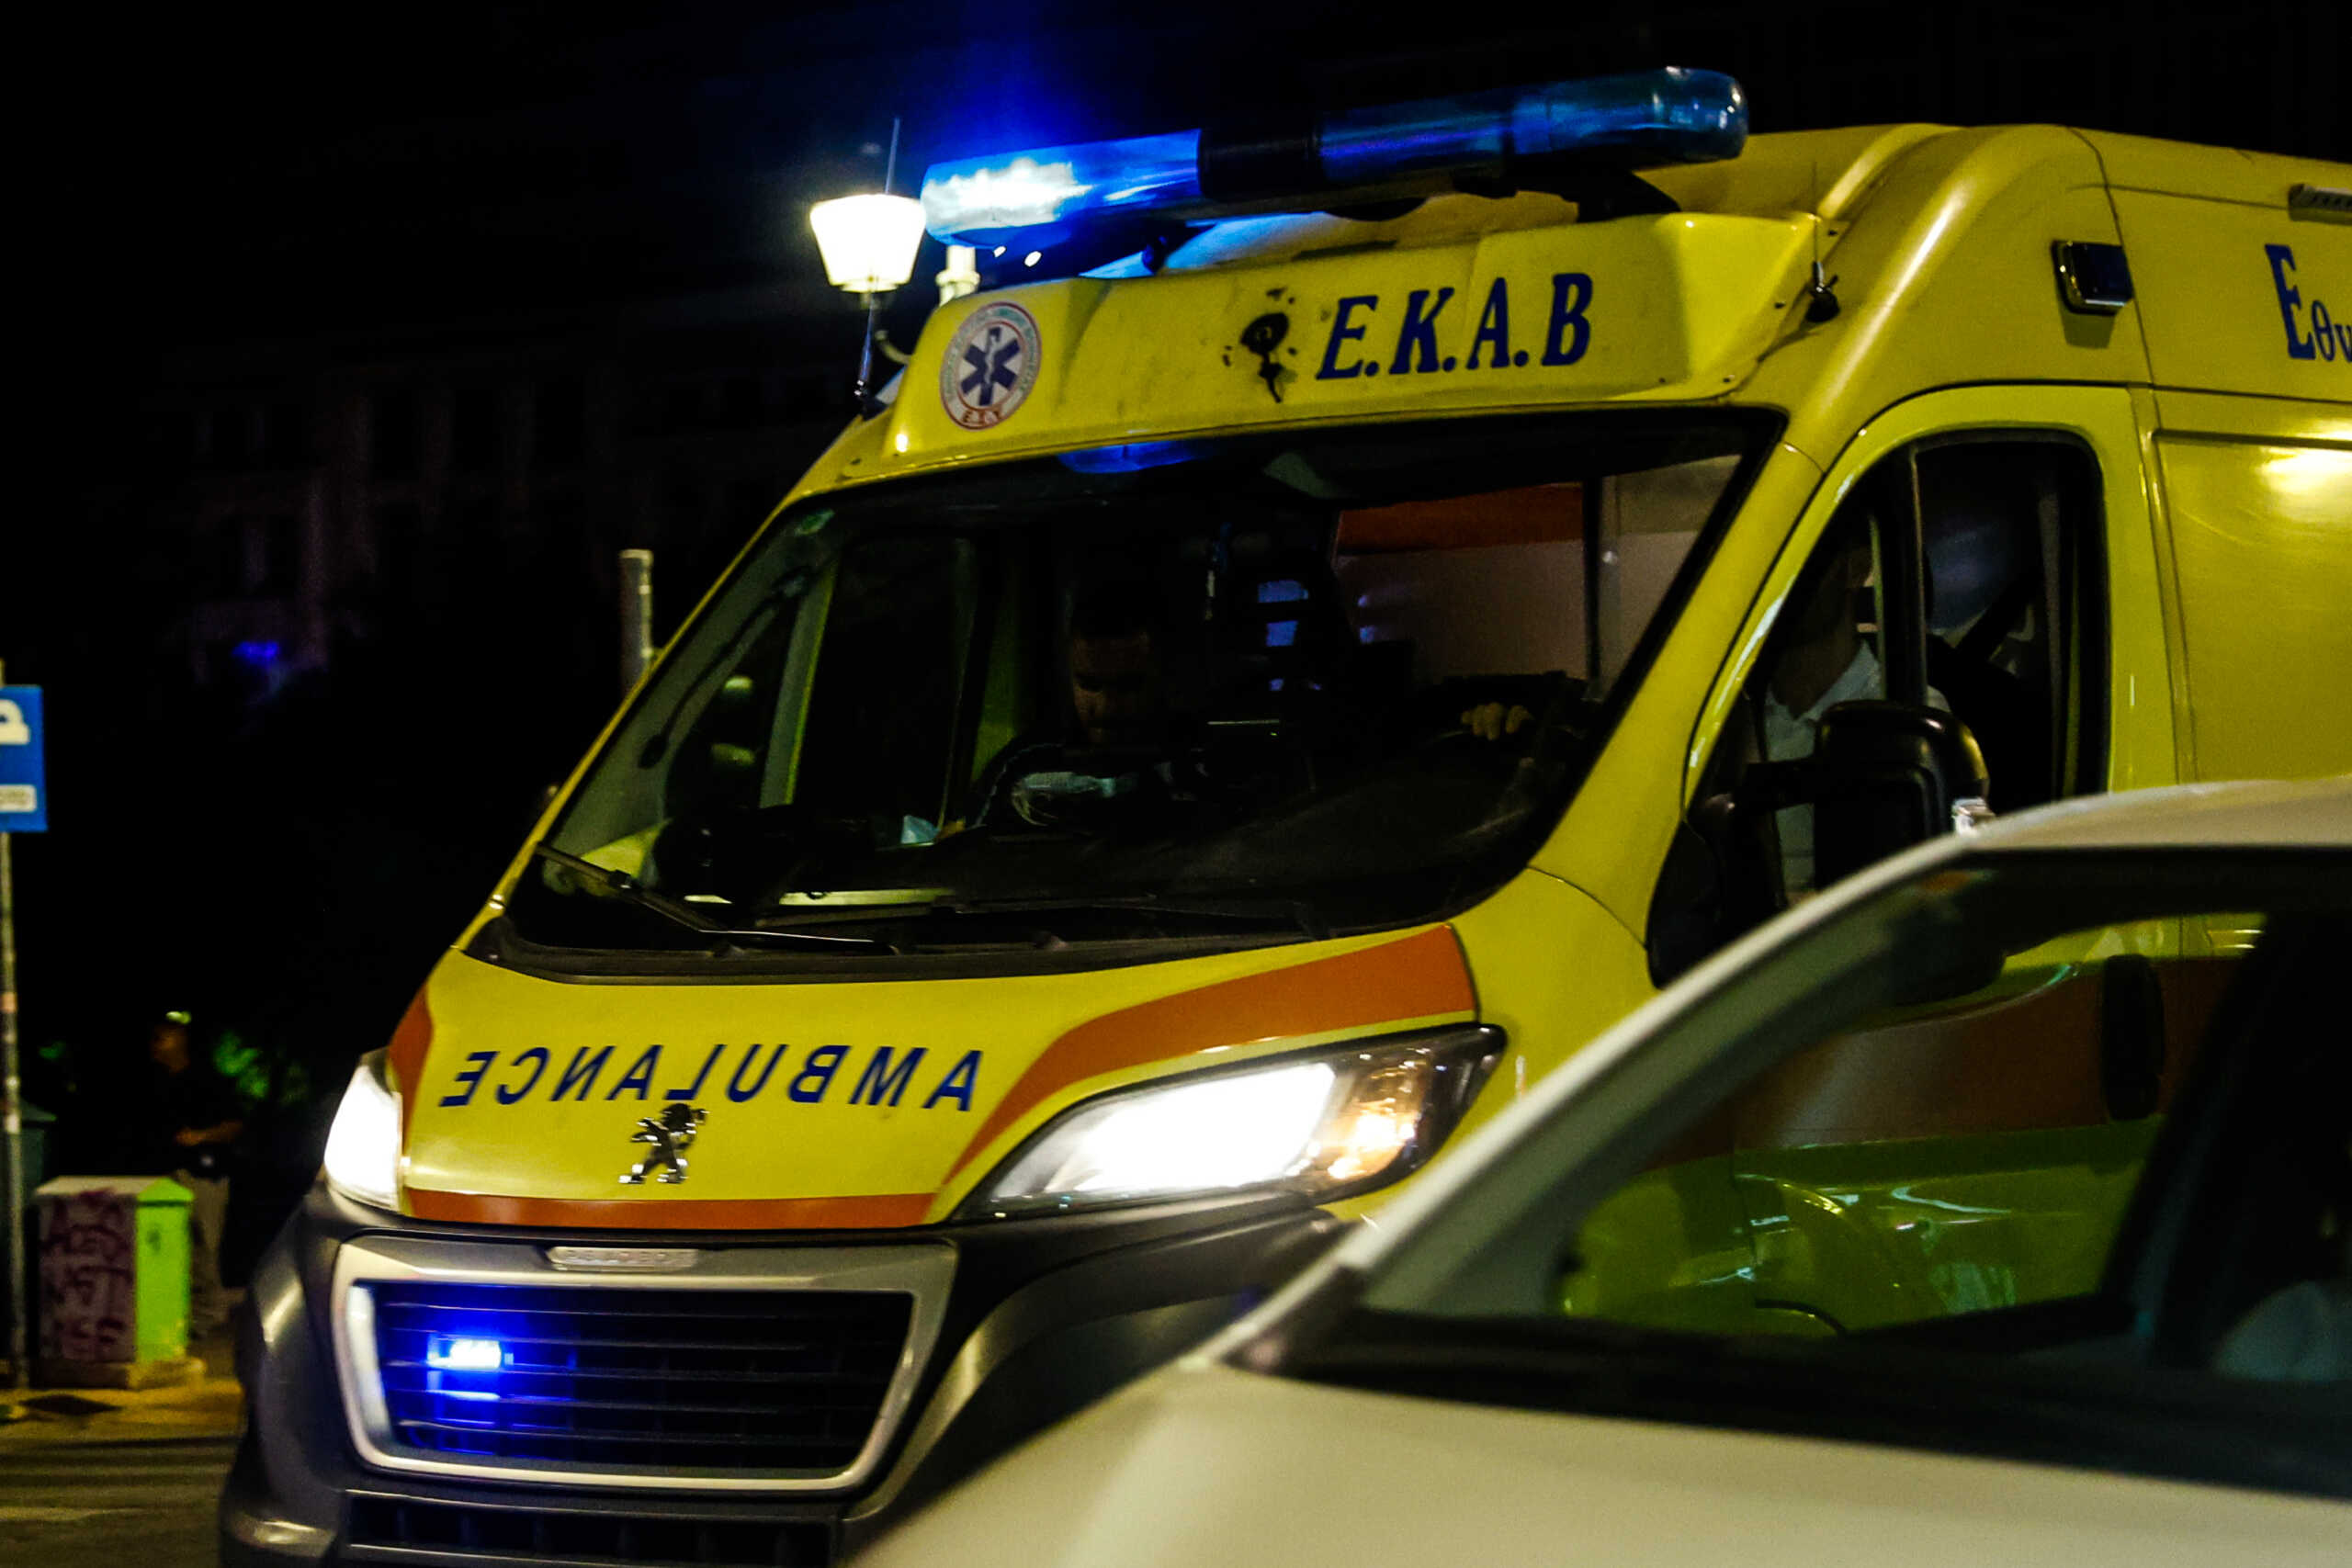 Σέρρες: Σοβαρά επεισόδια μεταξύ μεταναστών – Τραυματίστηκε διασώστης του ΕΚΑΒ